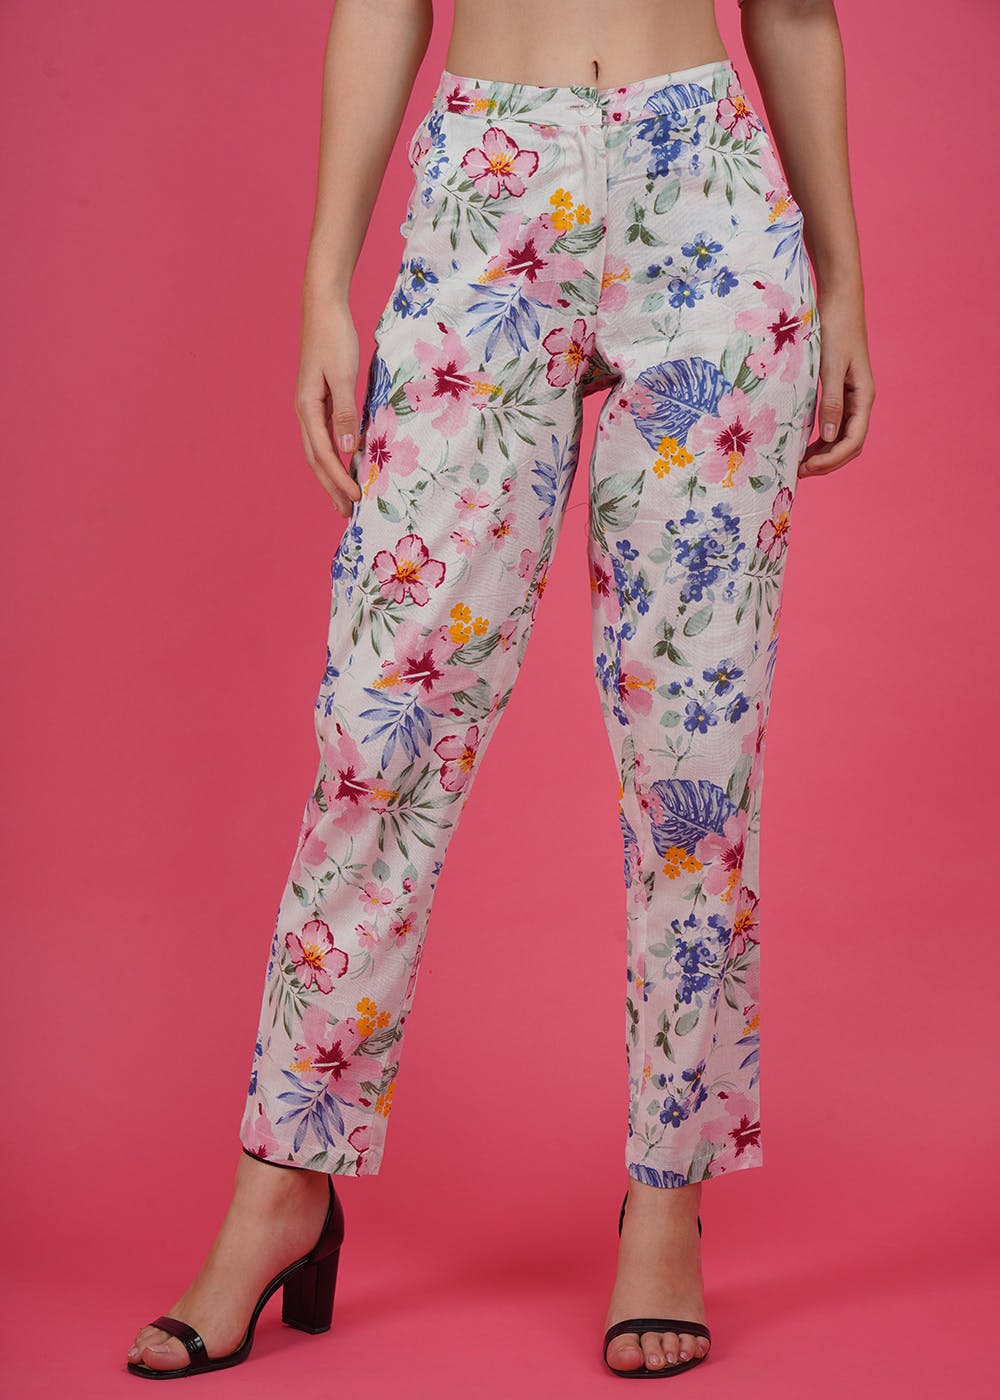 Buy Multicoloured Trousers  Pants for Women by Encrustd Online  Ajiocom